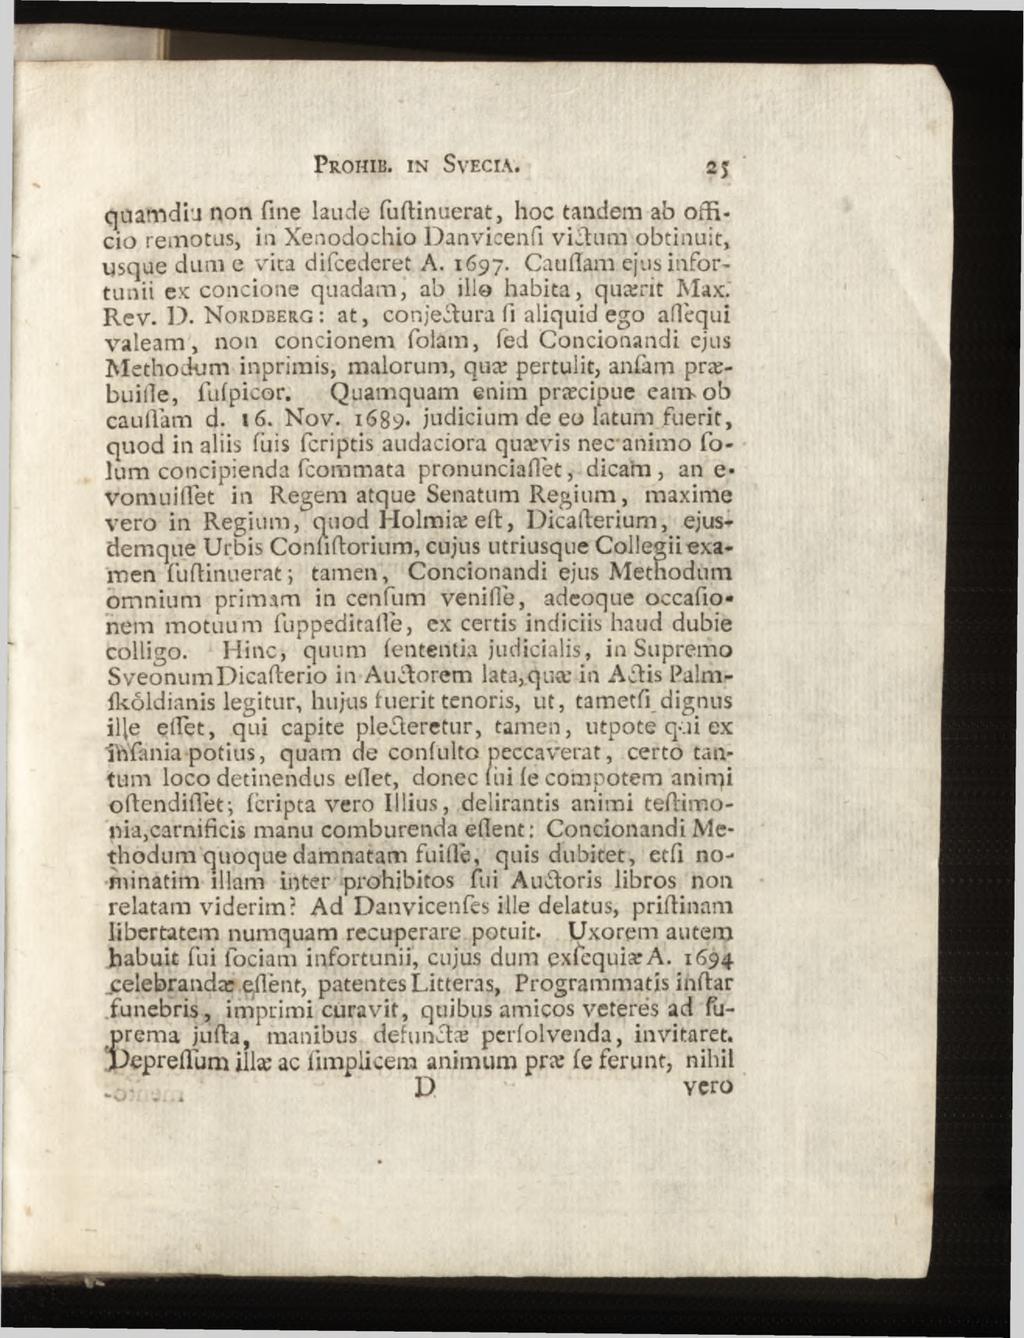 quamdi'j non fine laude fudinuerat, hoc tandem ab officio remotus, in Xenodochio Danvicenfi vied um obtinuit, usque dum e vita difcederet A. 1697.